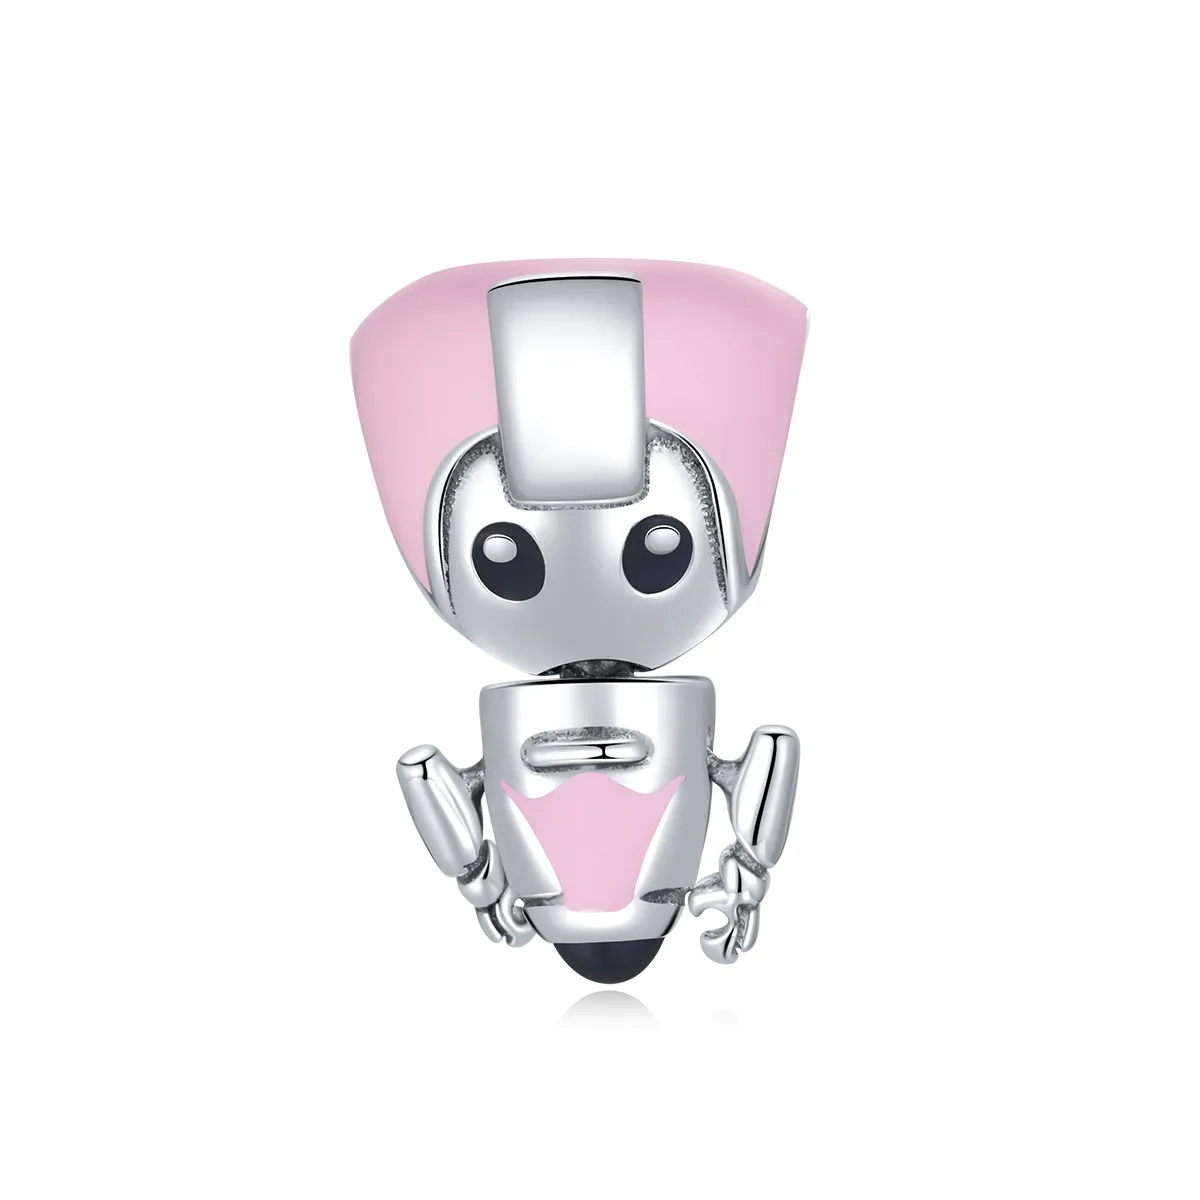 Pandora Style Pandantiv Robot Roz pentru Bebeluși - SCC1774